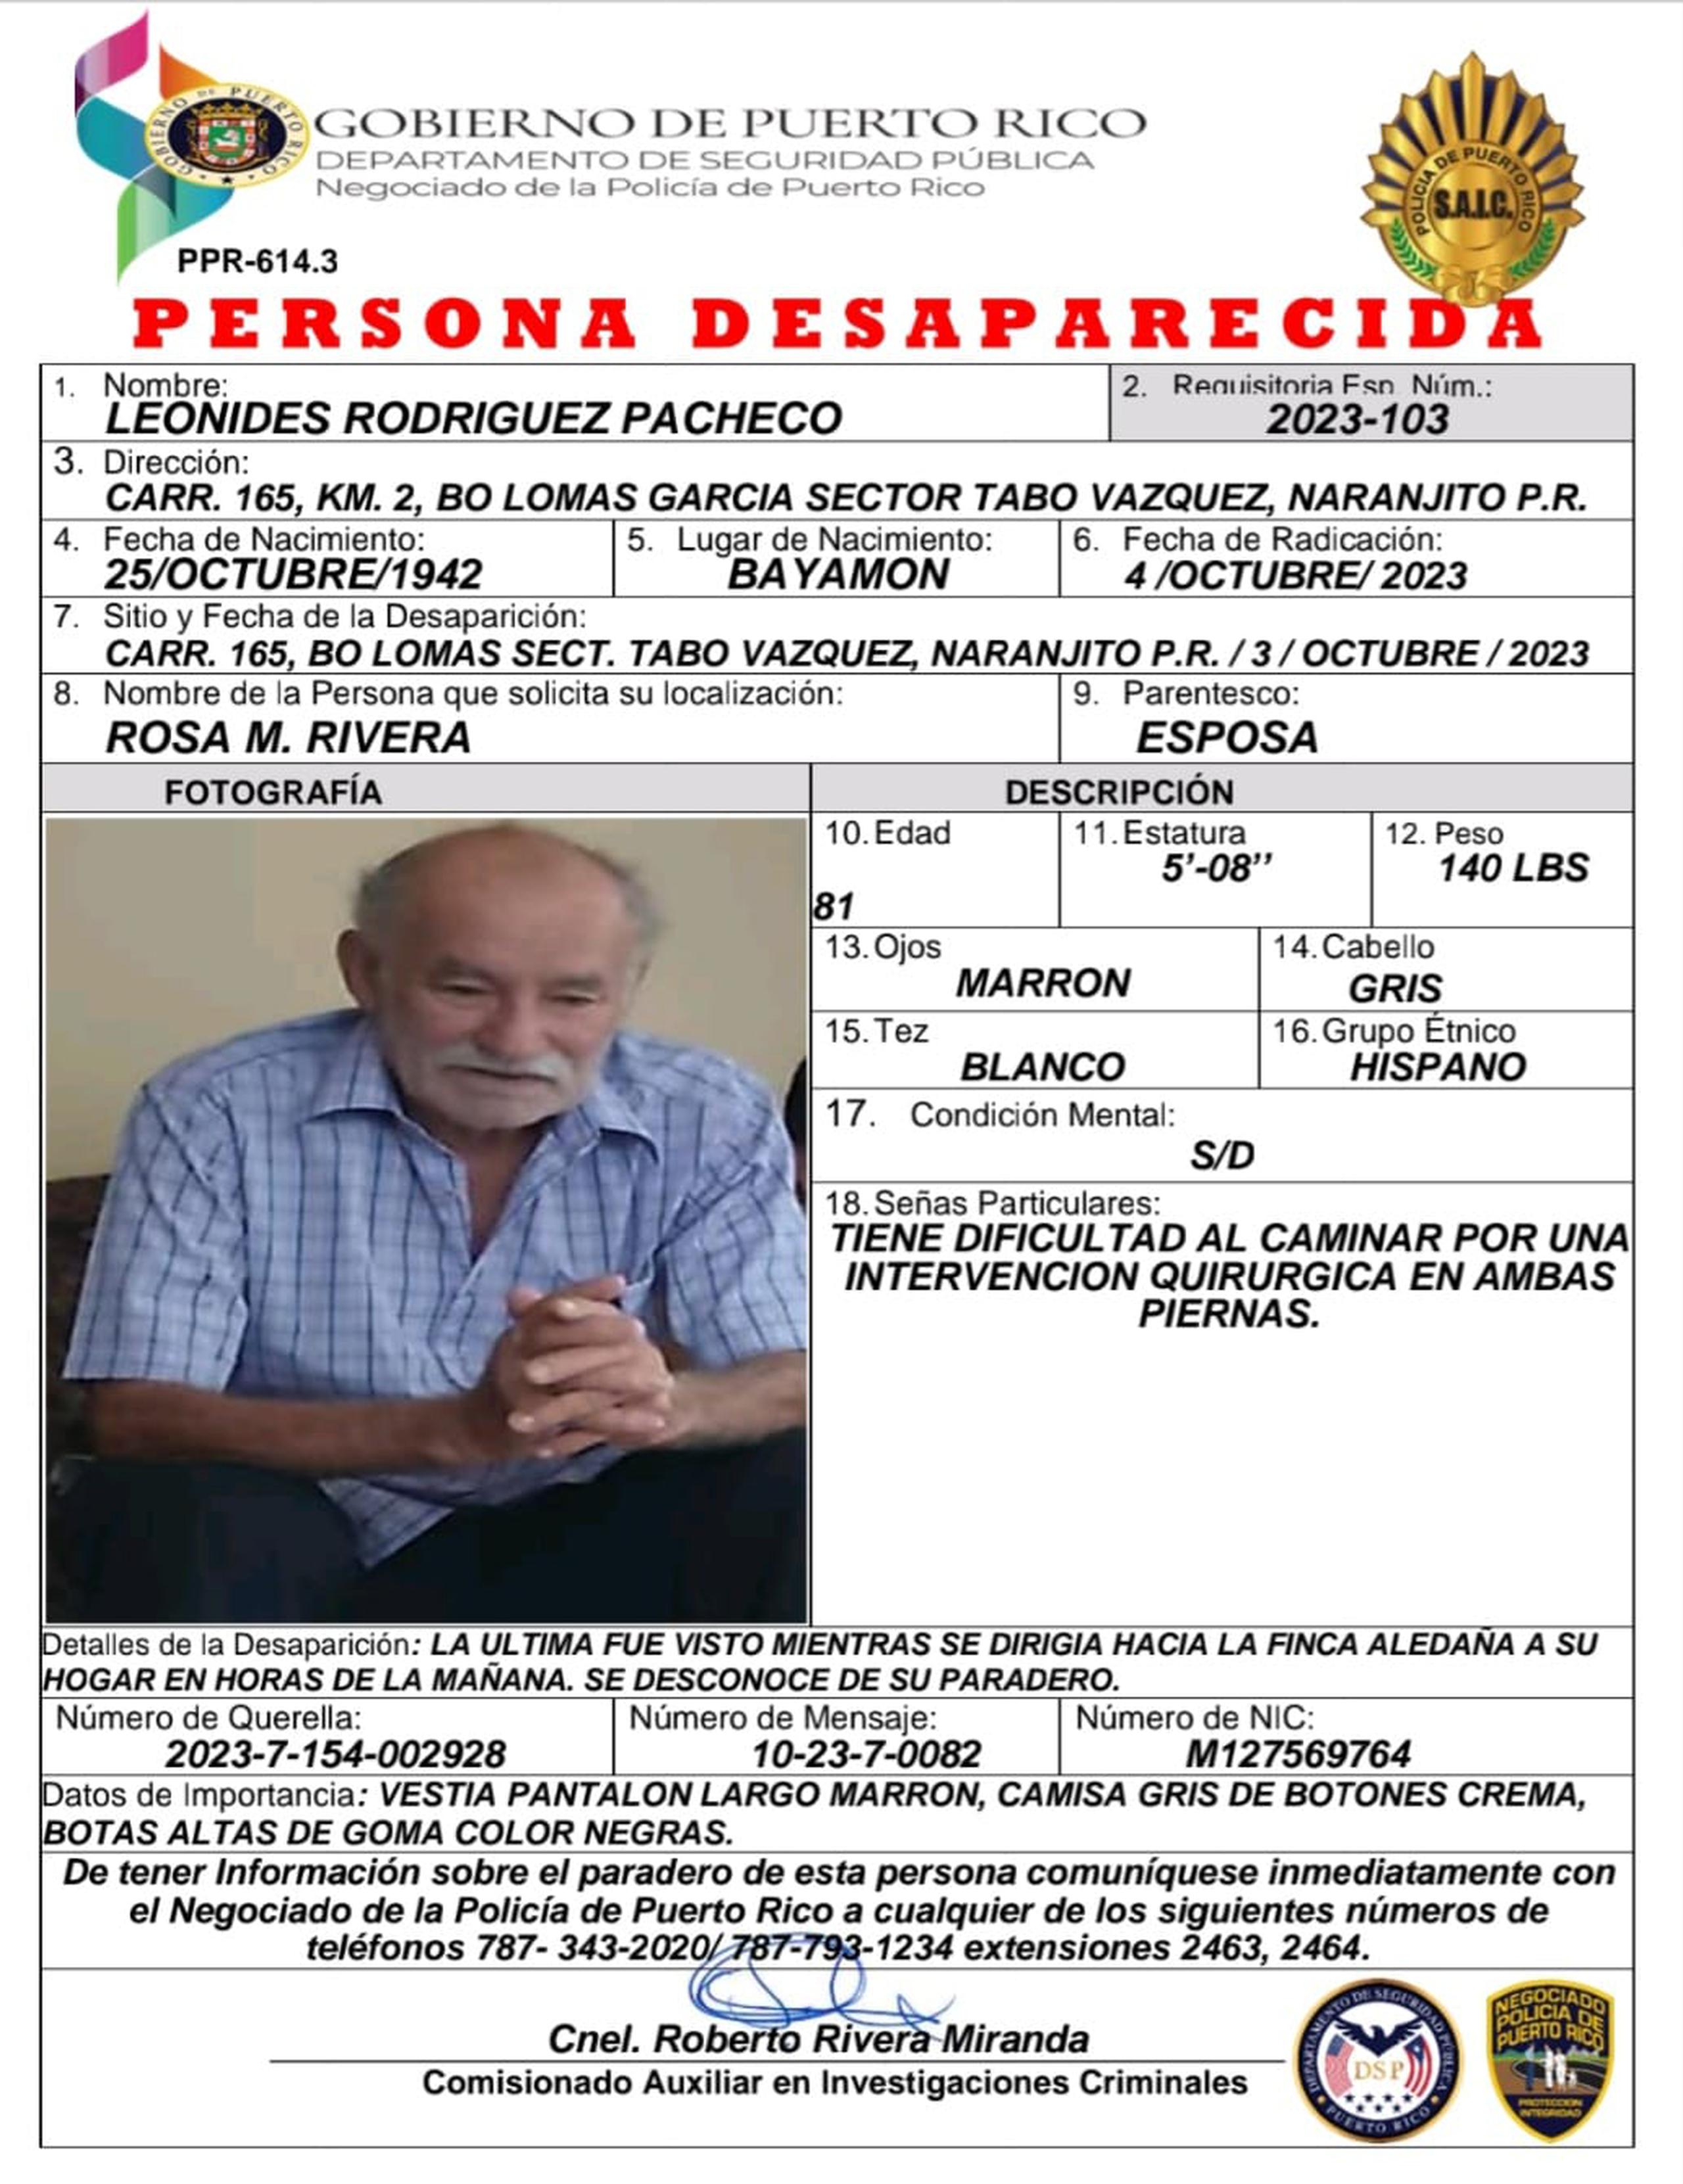 Leonides Rodríguez Pacheco, de 81 años, se encuentra desaparecido desde el martes, cuando salió de su residencia localizada en el sector Tabo Vázquez del barrio Lomas, en Naranjito y no regresó.